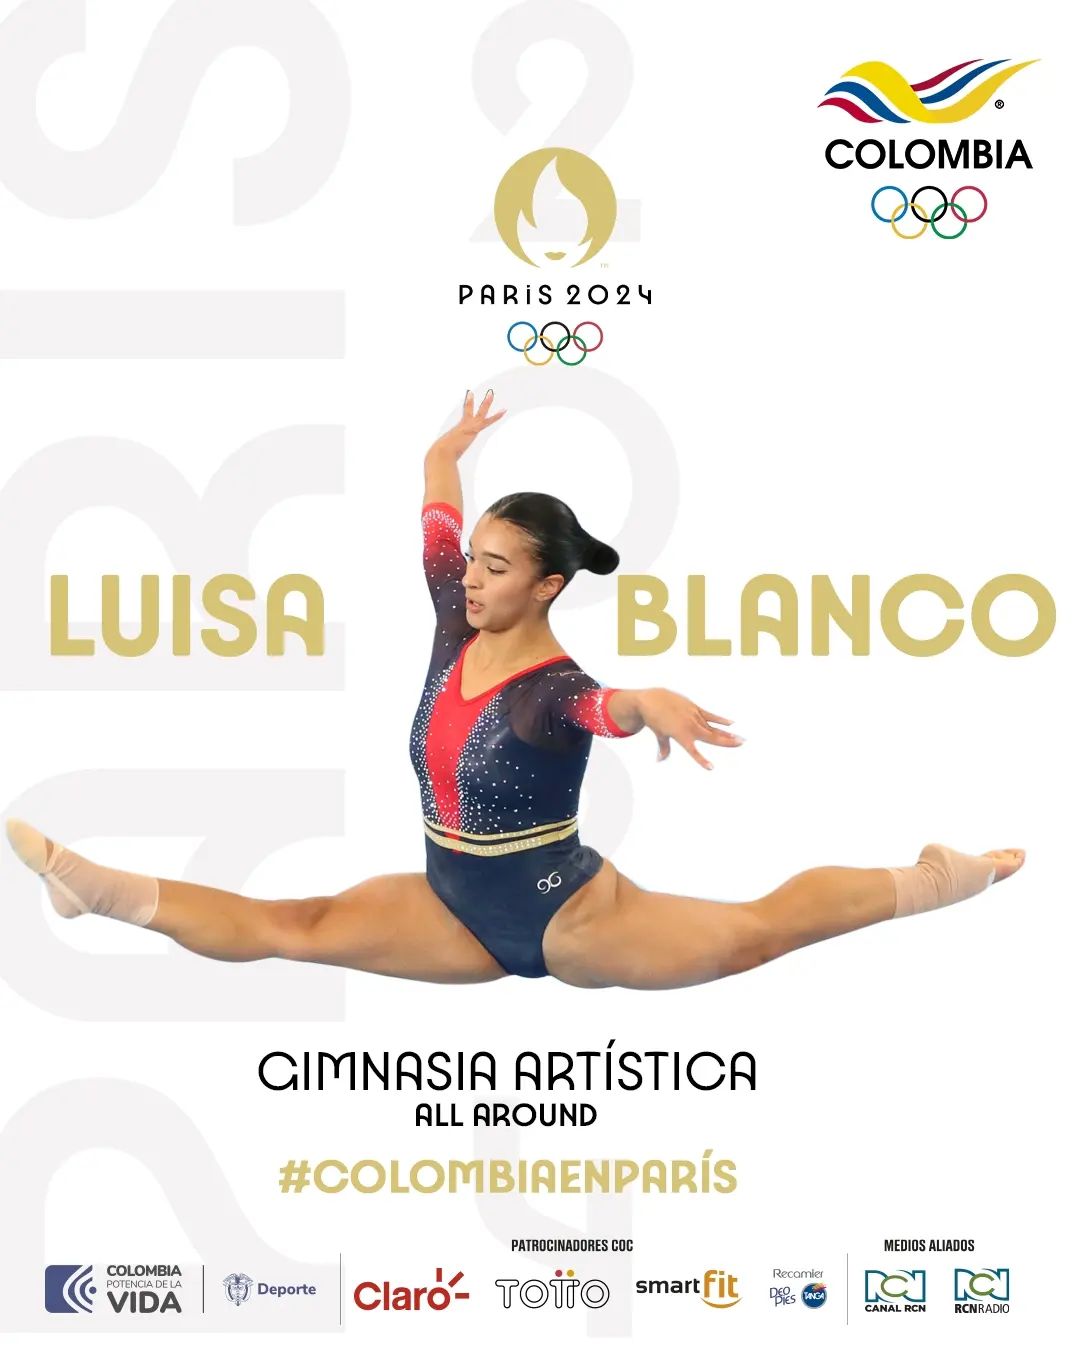 Luisa Blanco asegura su participación en los juegos Olímpicos de París 2024